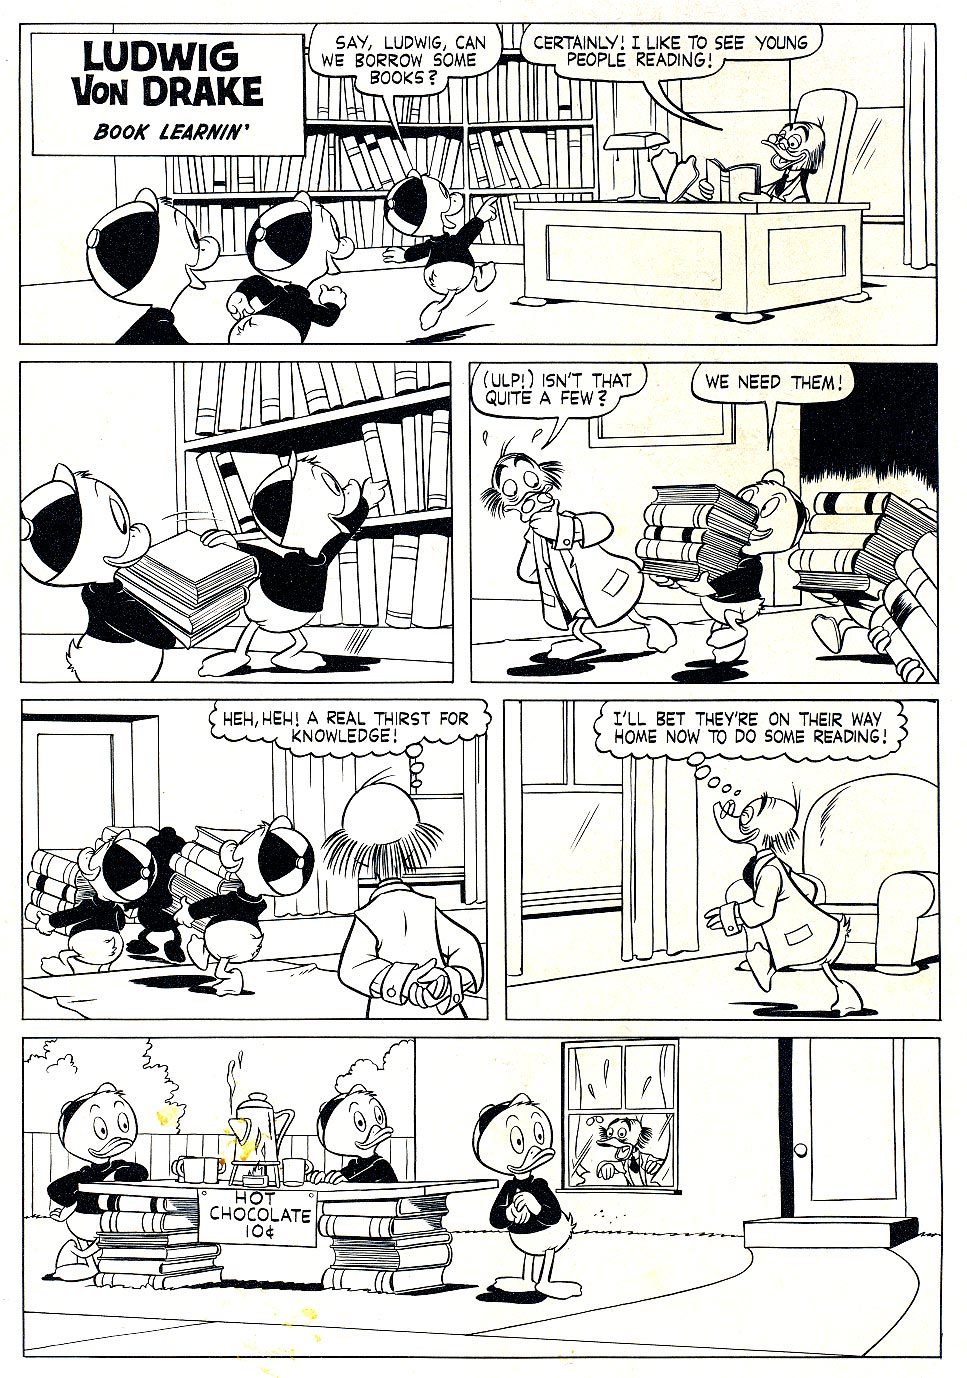 Read online Walt Disney's Ludwig Von Drake comic -  Issue #2 - 2